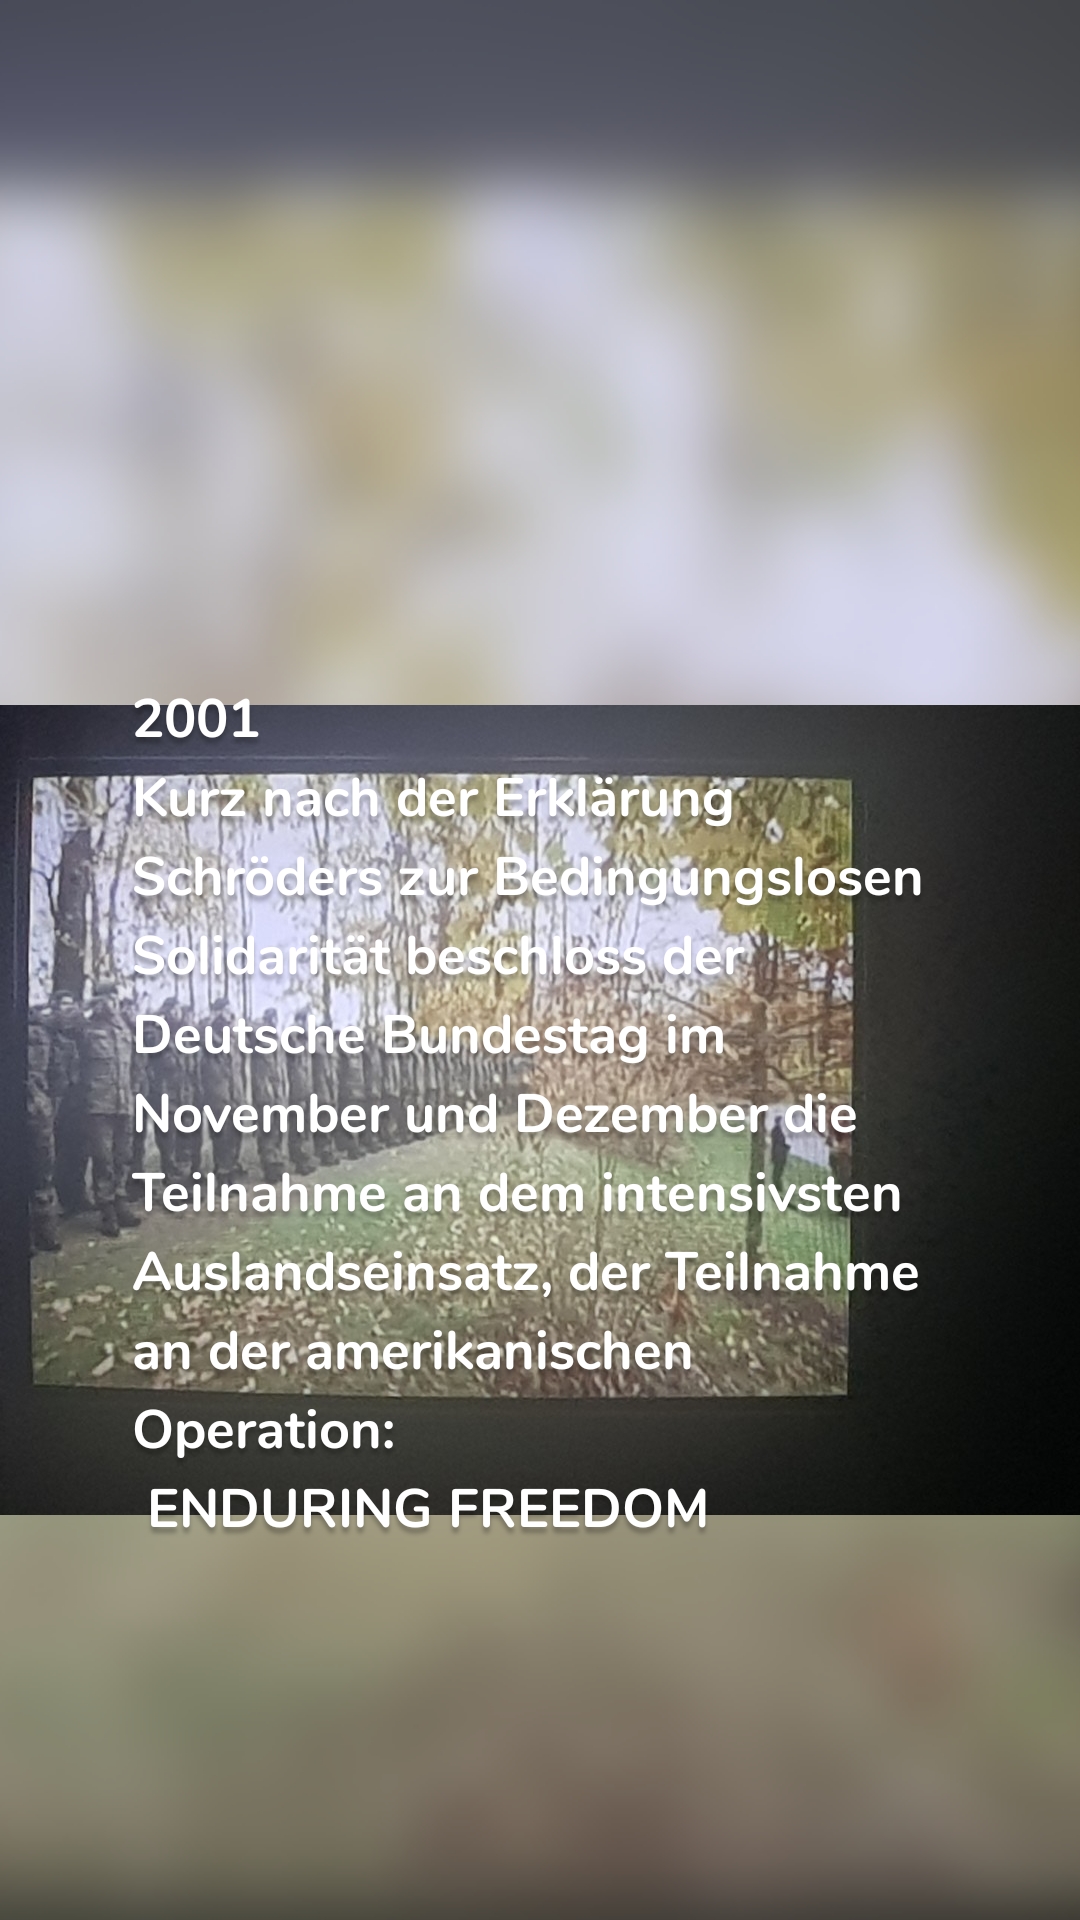 2001
Kurz nach der Erklärung Schröders zur Bedingungslosen Solidarität beschloss der Deutsche Bundestag im November und Dezember die Teilnahme an dem intensivsten Auslandseinsatz, der Teilnahme an der amerikanischen Operation:
 ENDURING FREEDOM